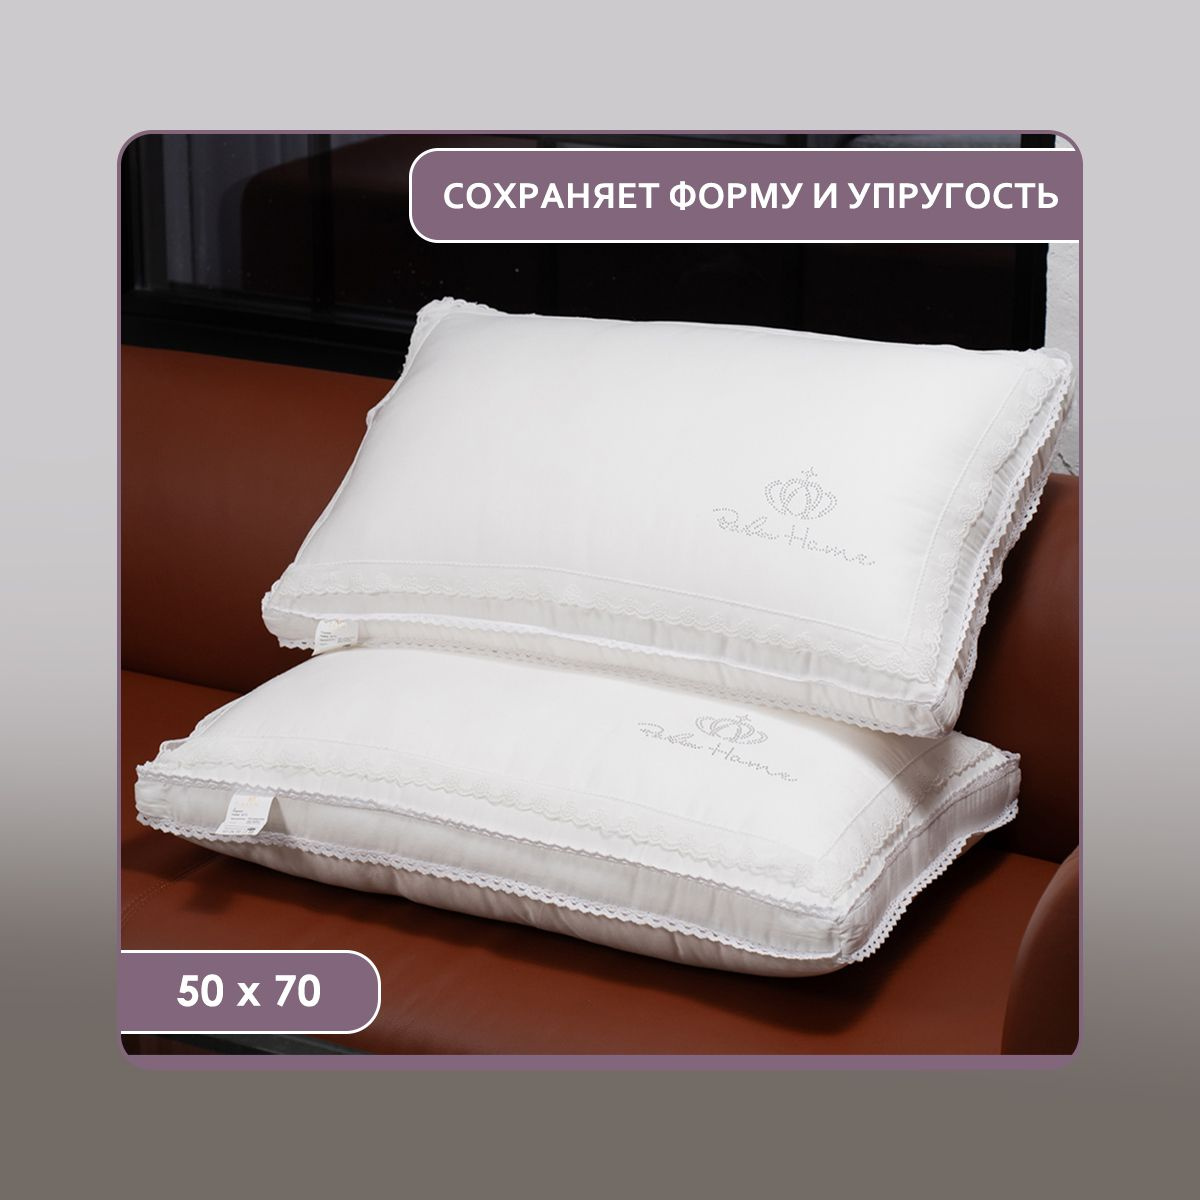 Эргономичная подушка для комфортного сна и отдыха